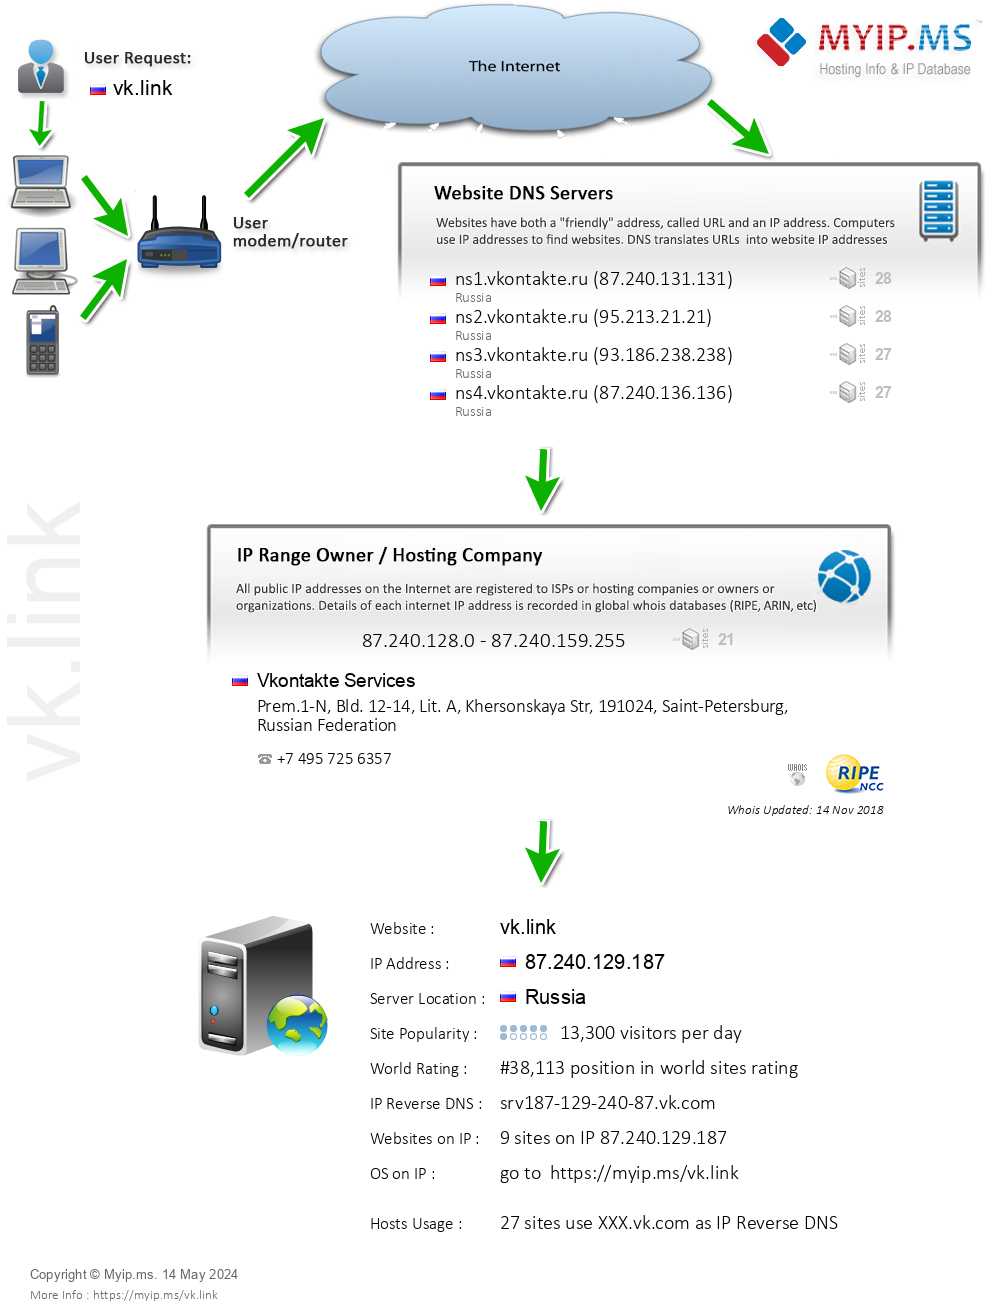 Vk.link - Website Hosting Visual IP Diagram